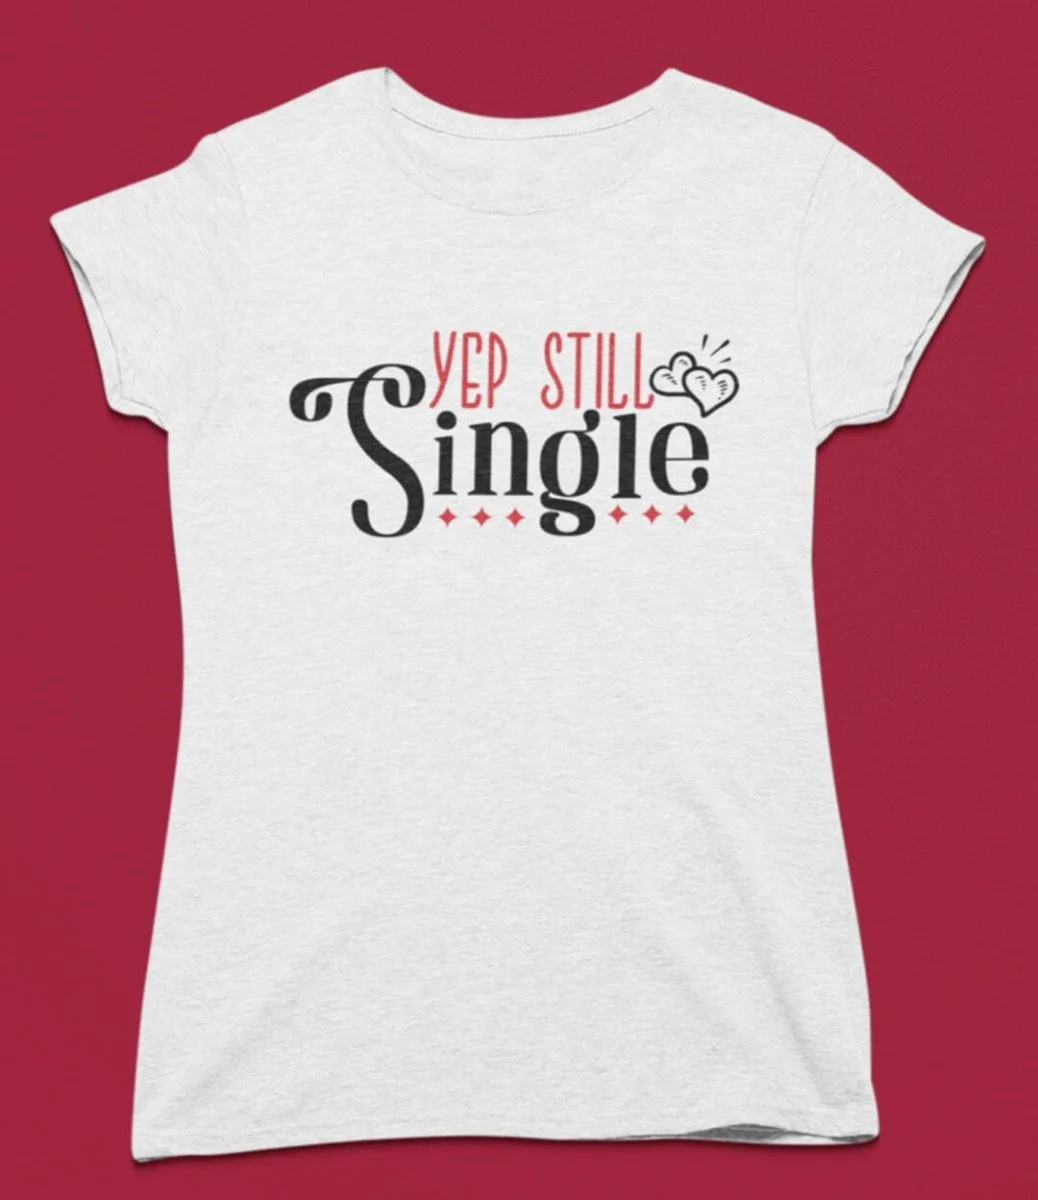 Yep Still Single T-shirt